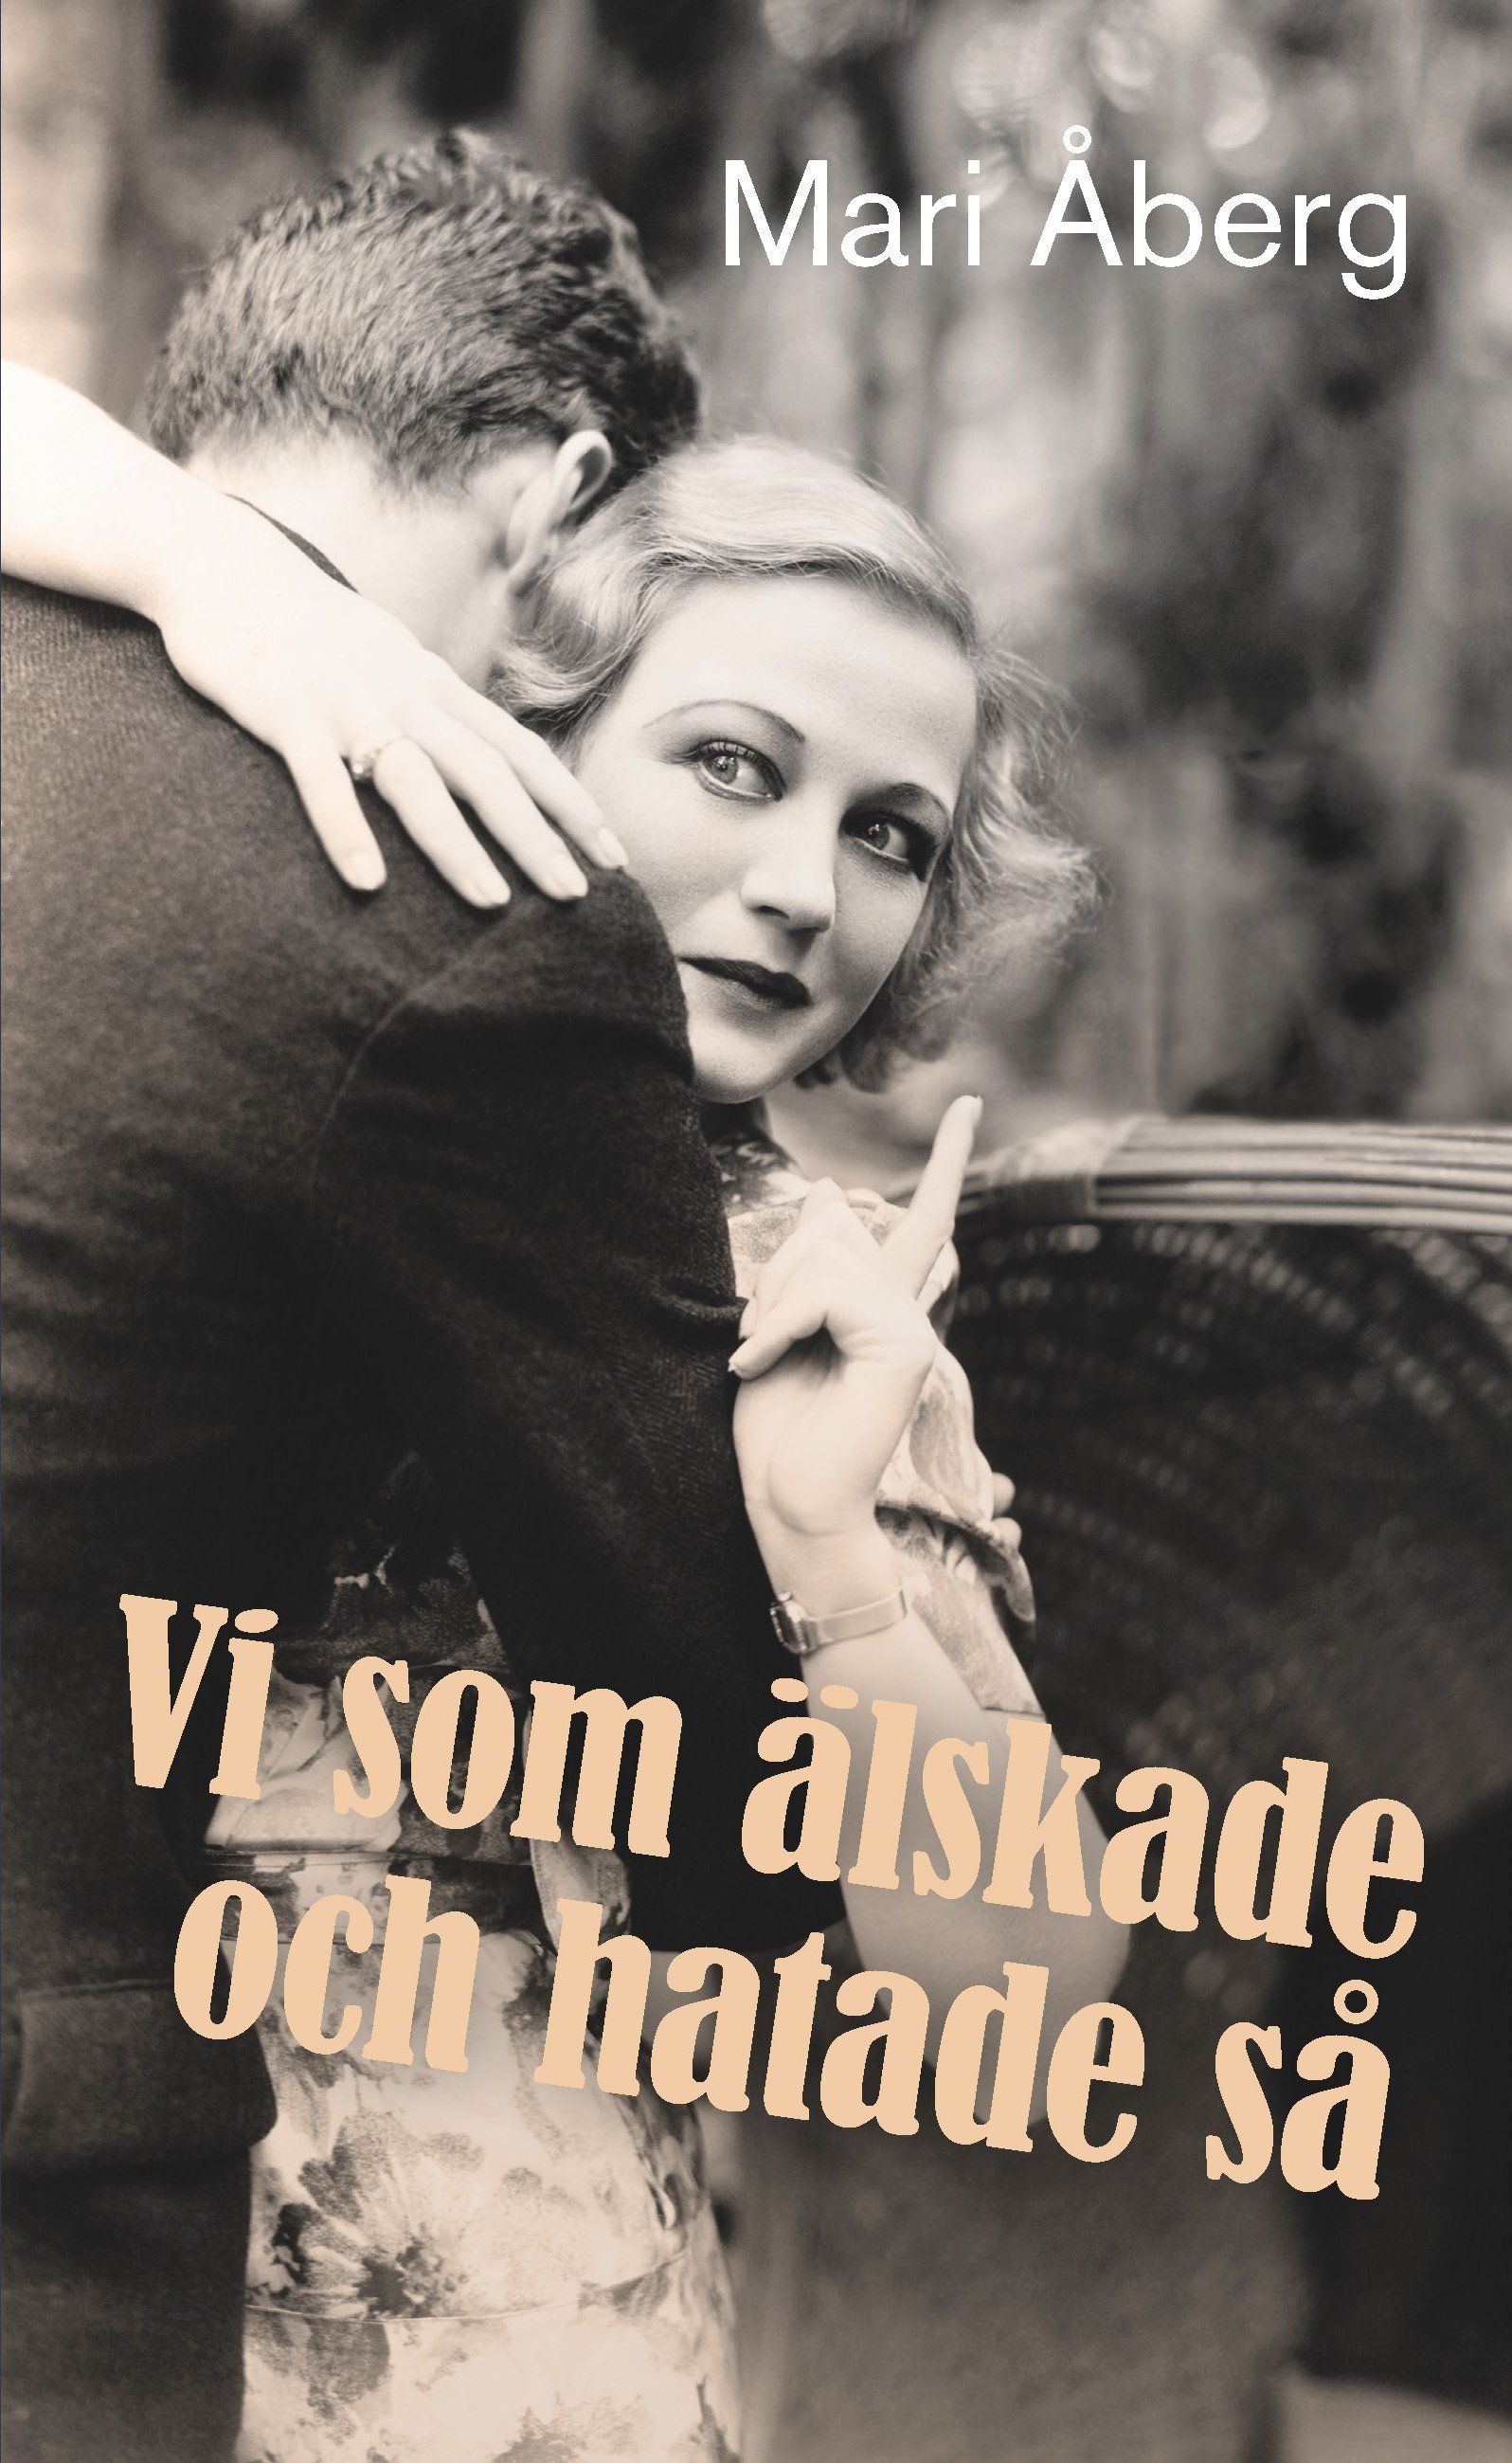 Vi som älskade och hatade så, eBook by Mari Åberg